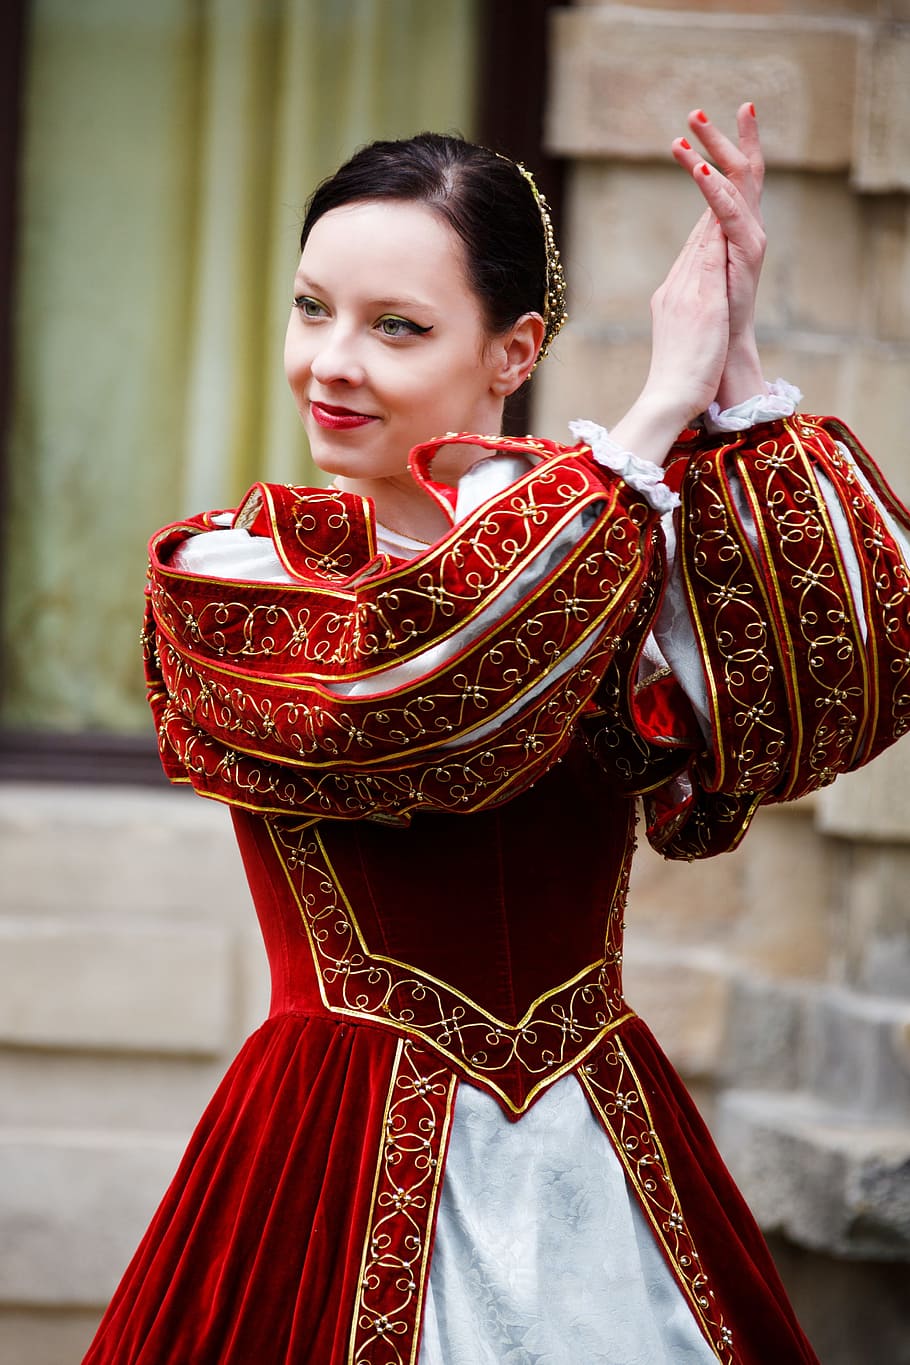 mujer, vistiendo, rojo, blanco, tradicional, vestido, palmas, manos, medieval, danza